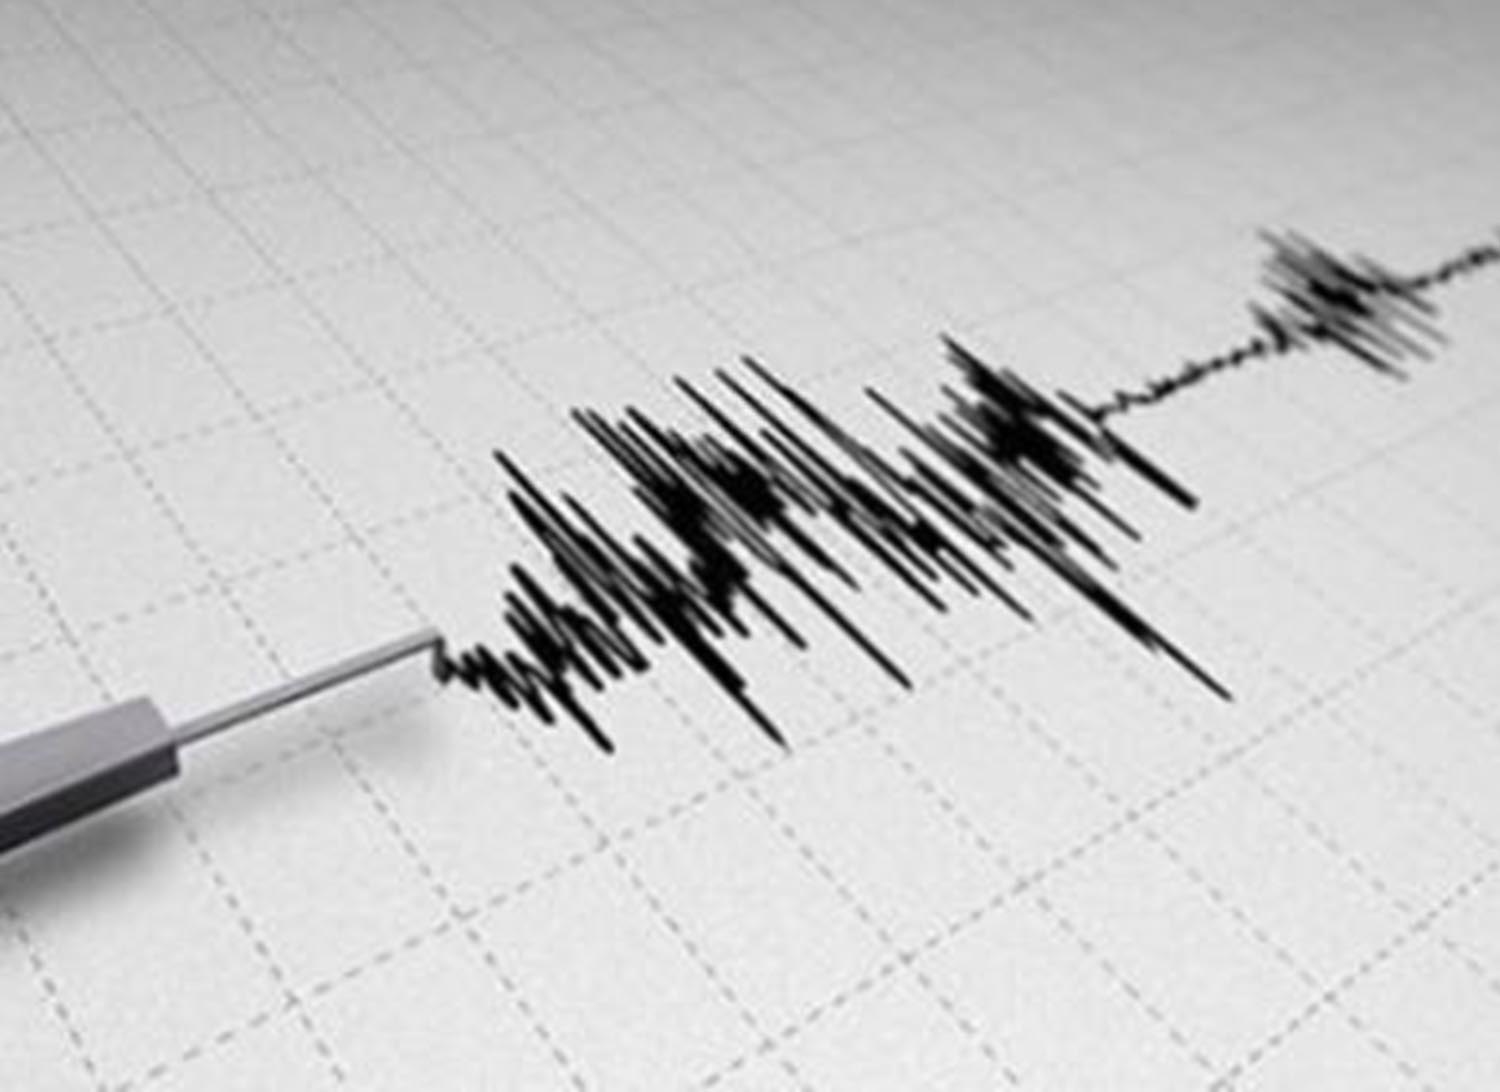 Σεισμός 5,1 Ρίχτερ στην Ιαπωνία – Δεν έχει εκδοθεί σήμα για τσουνάμι